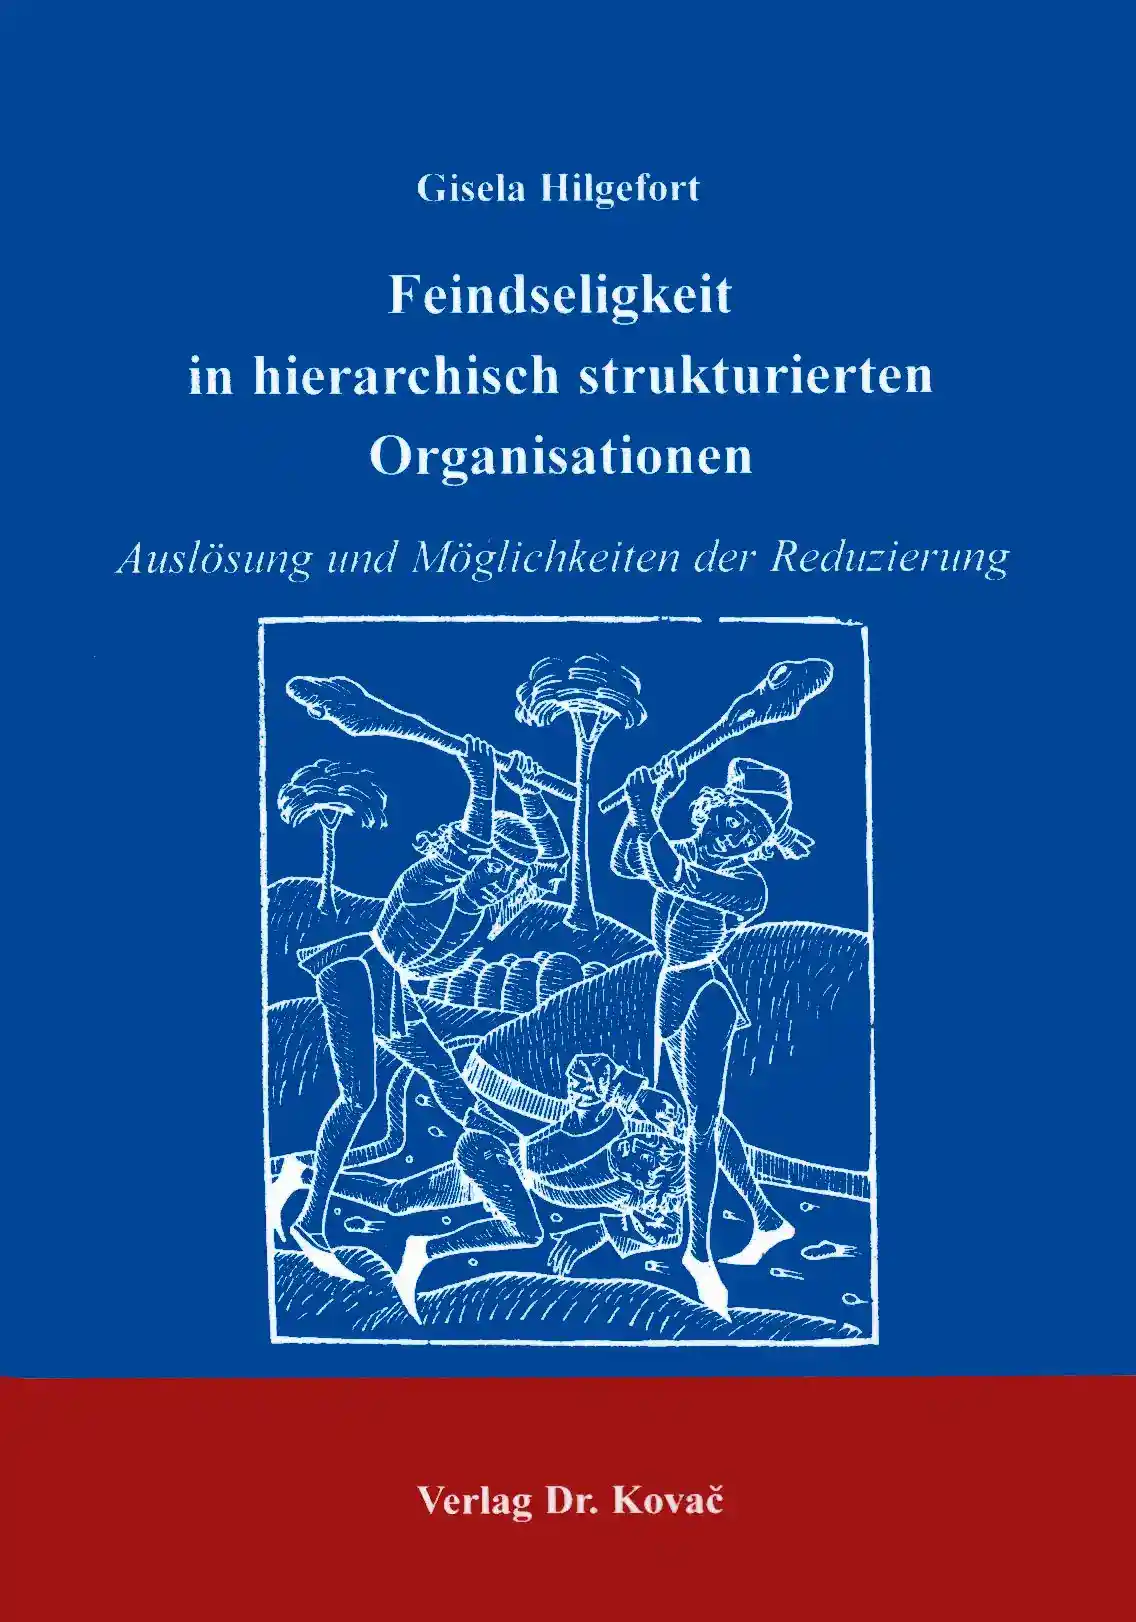 Feindseligkeit in hierarchisch strukturierten Organisationen (Forschungsarbeit)